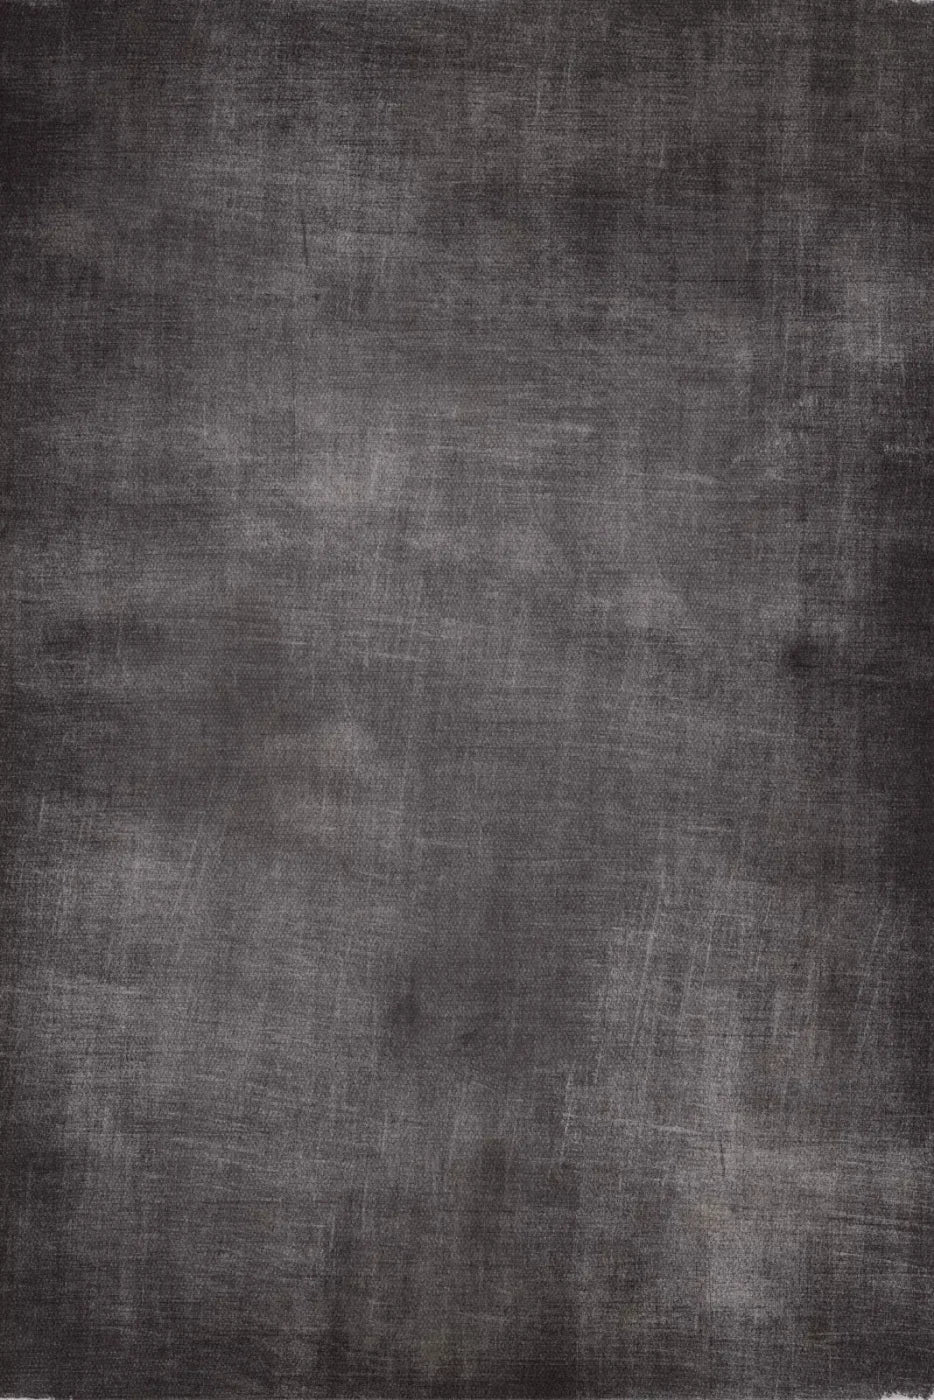 Blackboard 4X5 Rubbermat Floor ( 48 X 60 Inch ) Backdrop